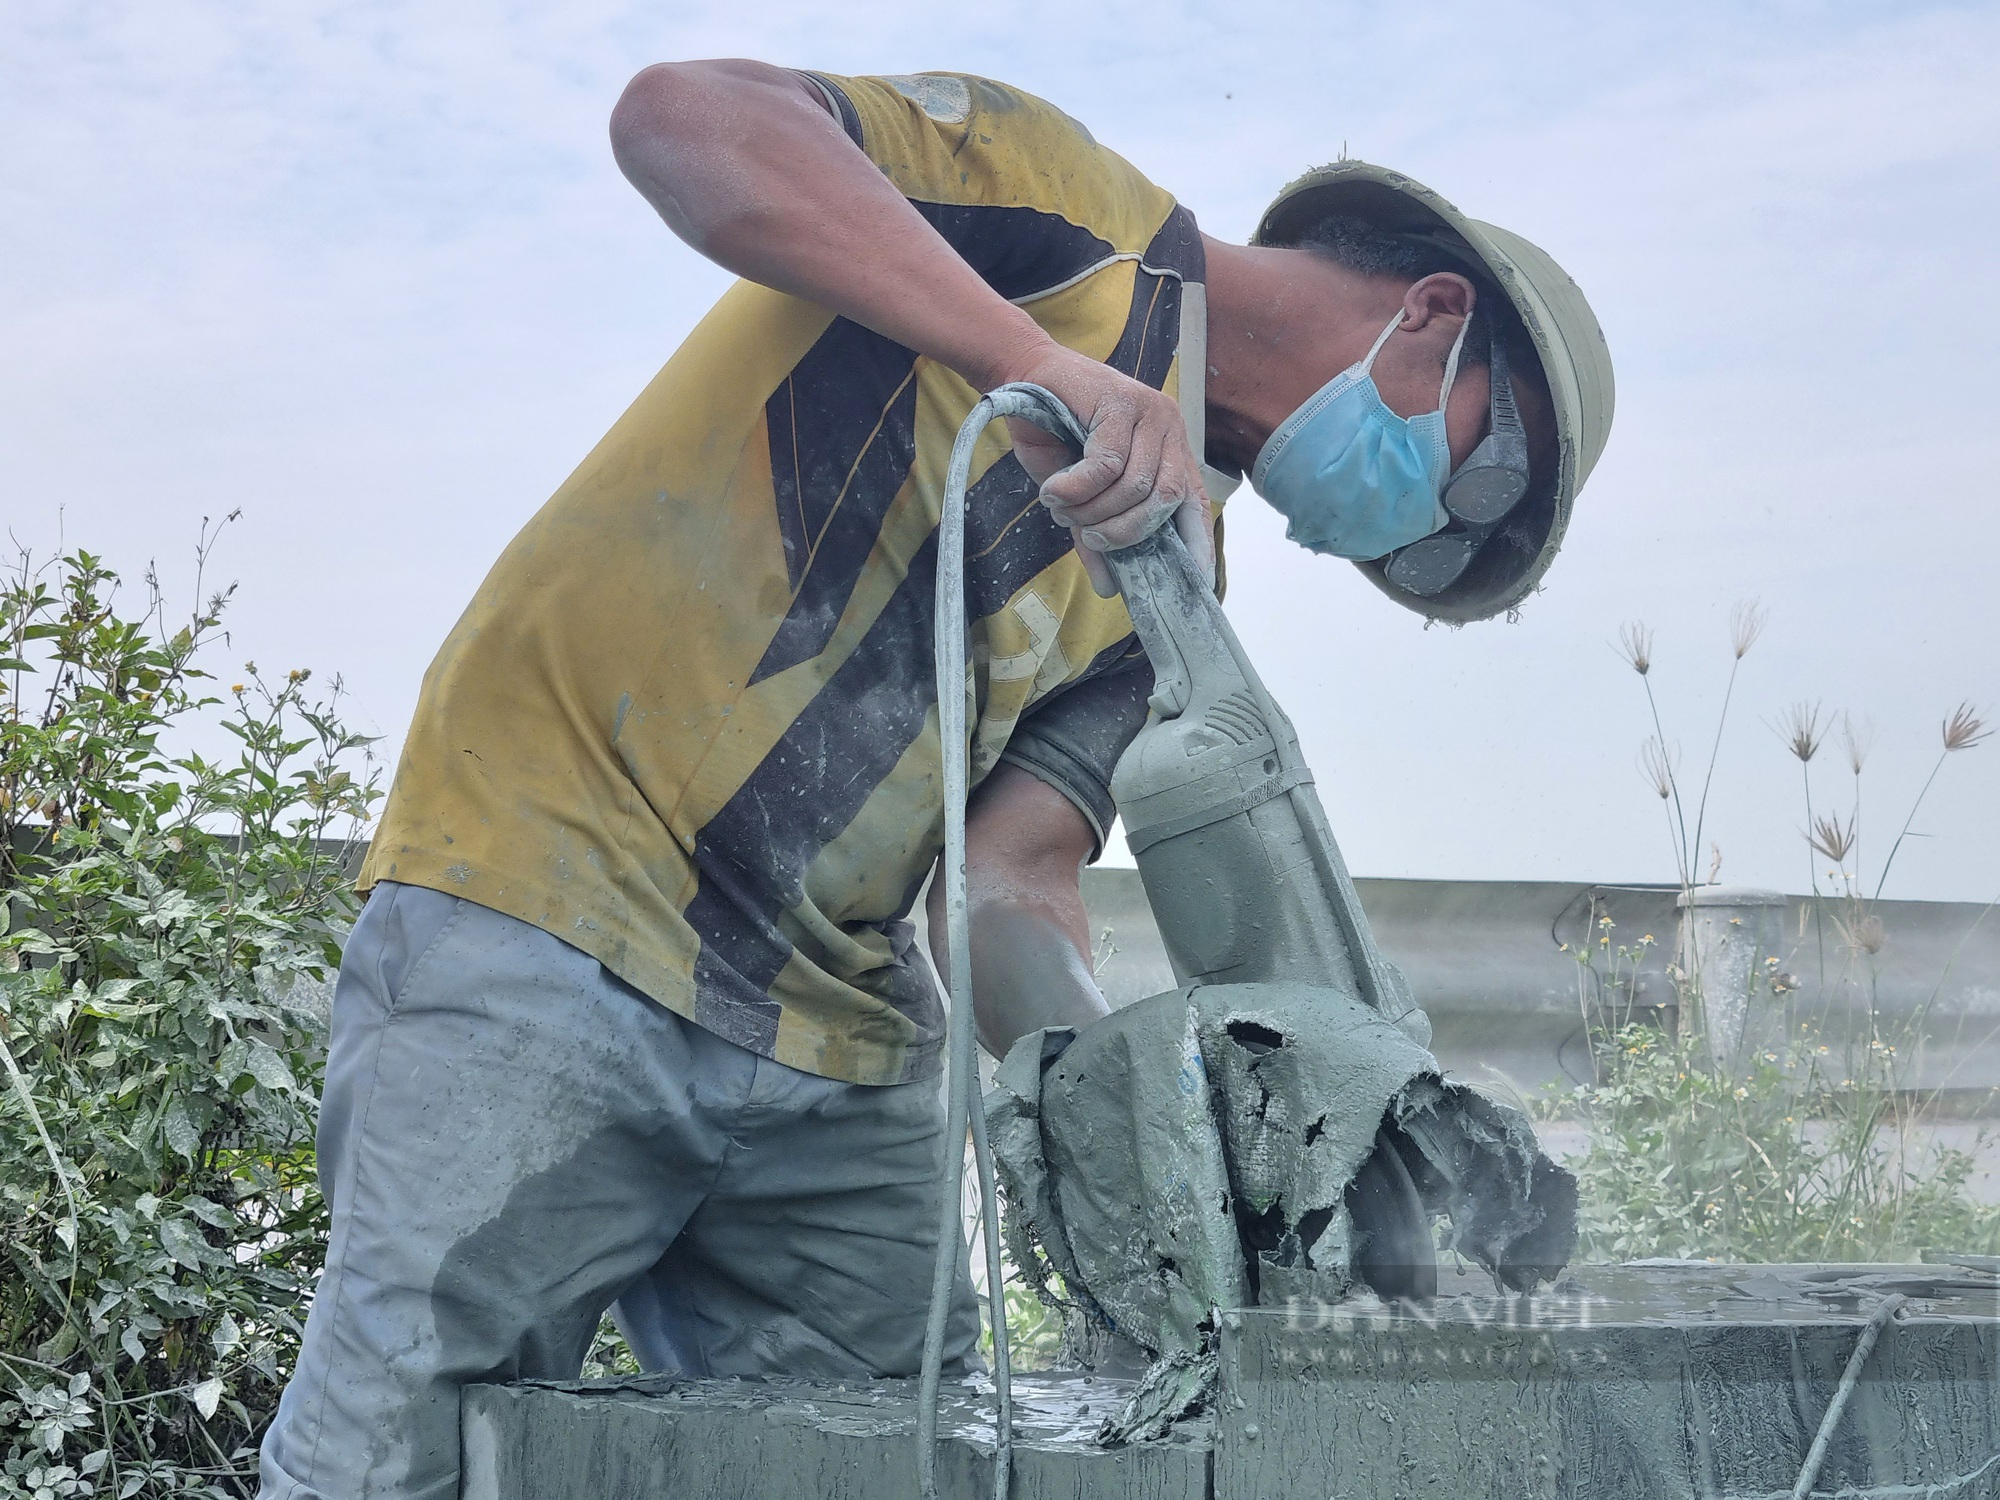 Ninh Bình: Cận cảnh nghề chế tác đá mỹ nghệ ở ngoài trời gần 40 độ C - Ảnh 7.